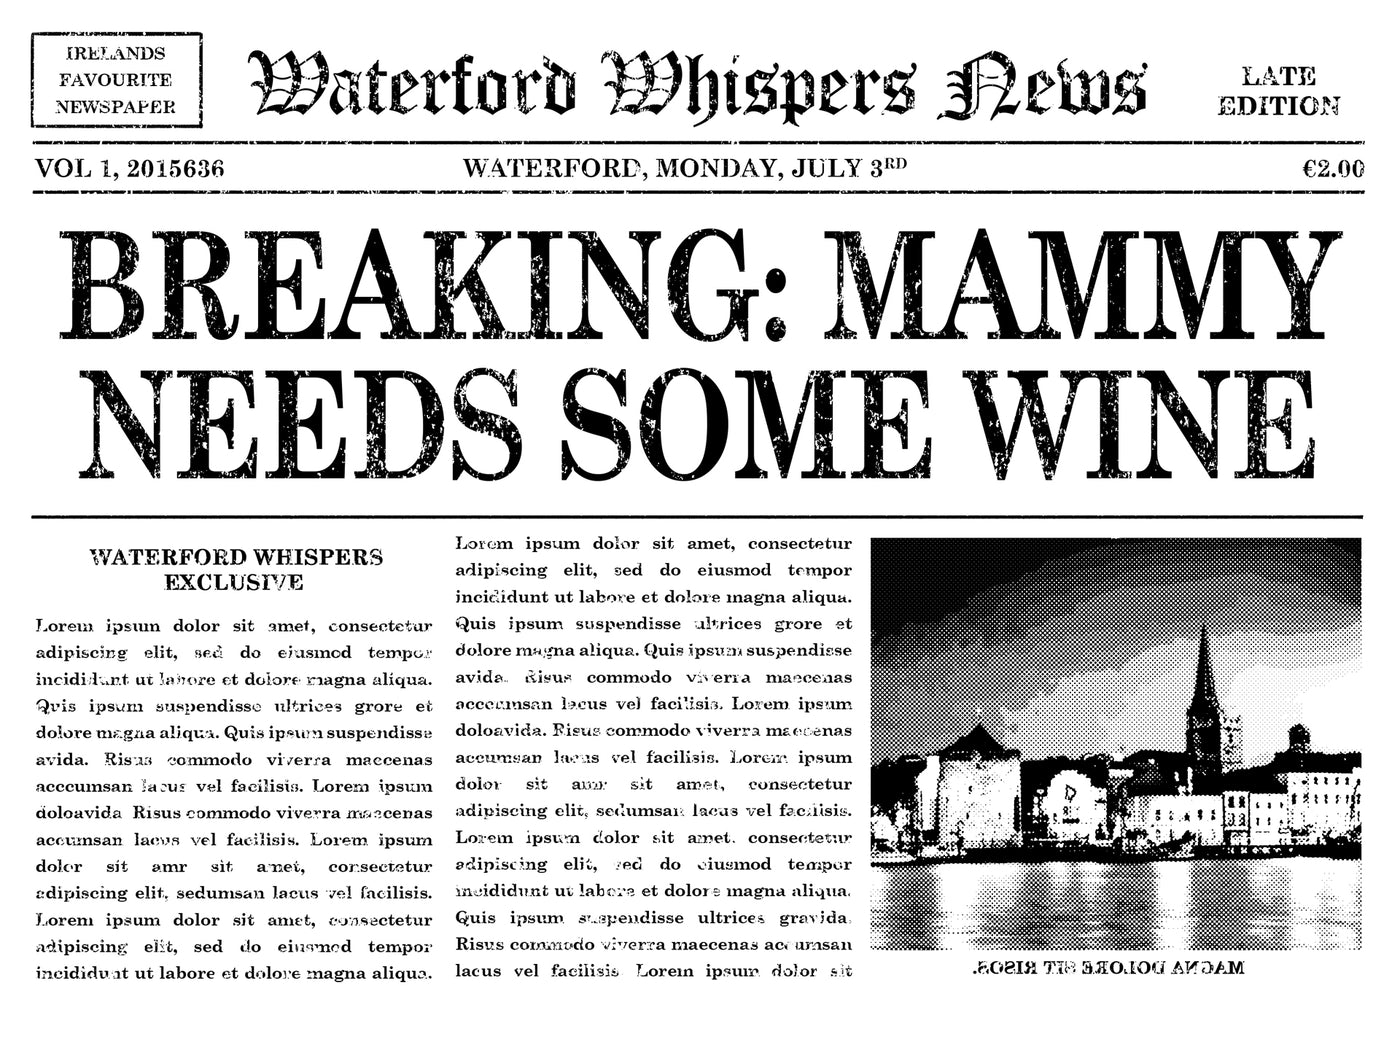 Mammy Needs Some Wine- Premium WWN Headline T-shirt